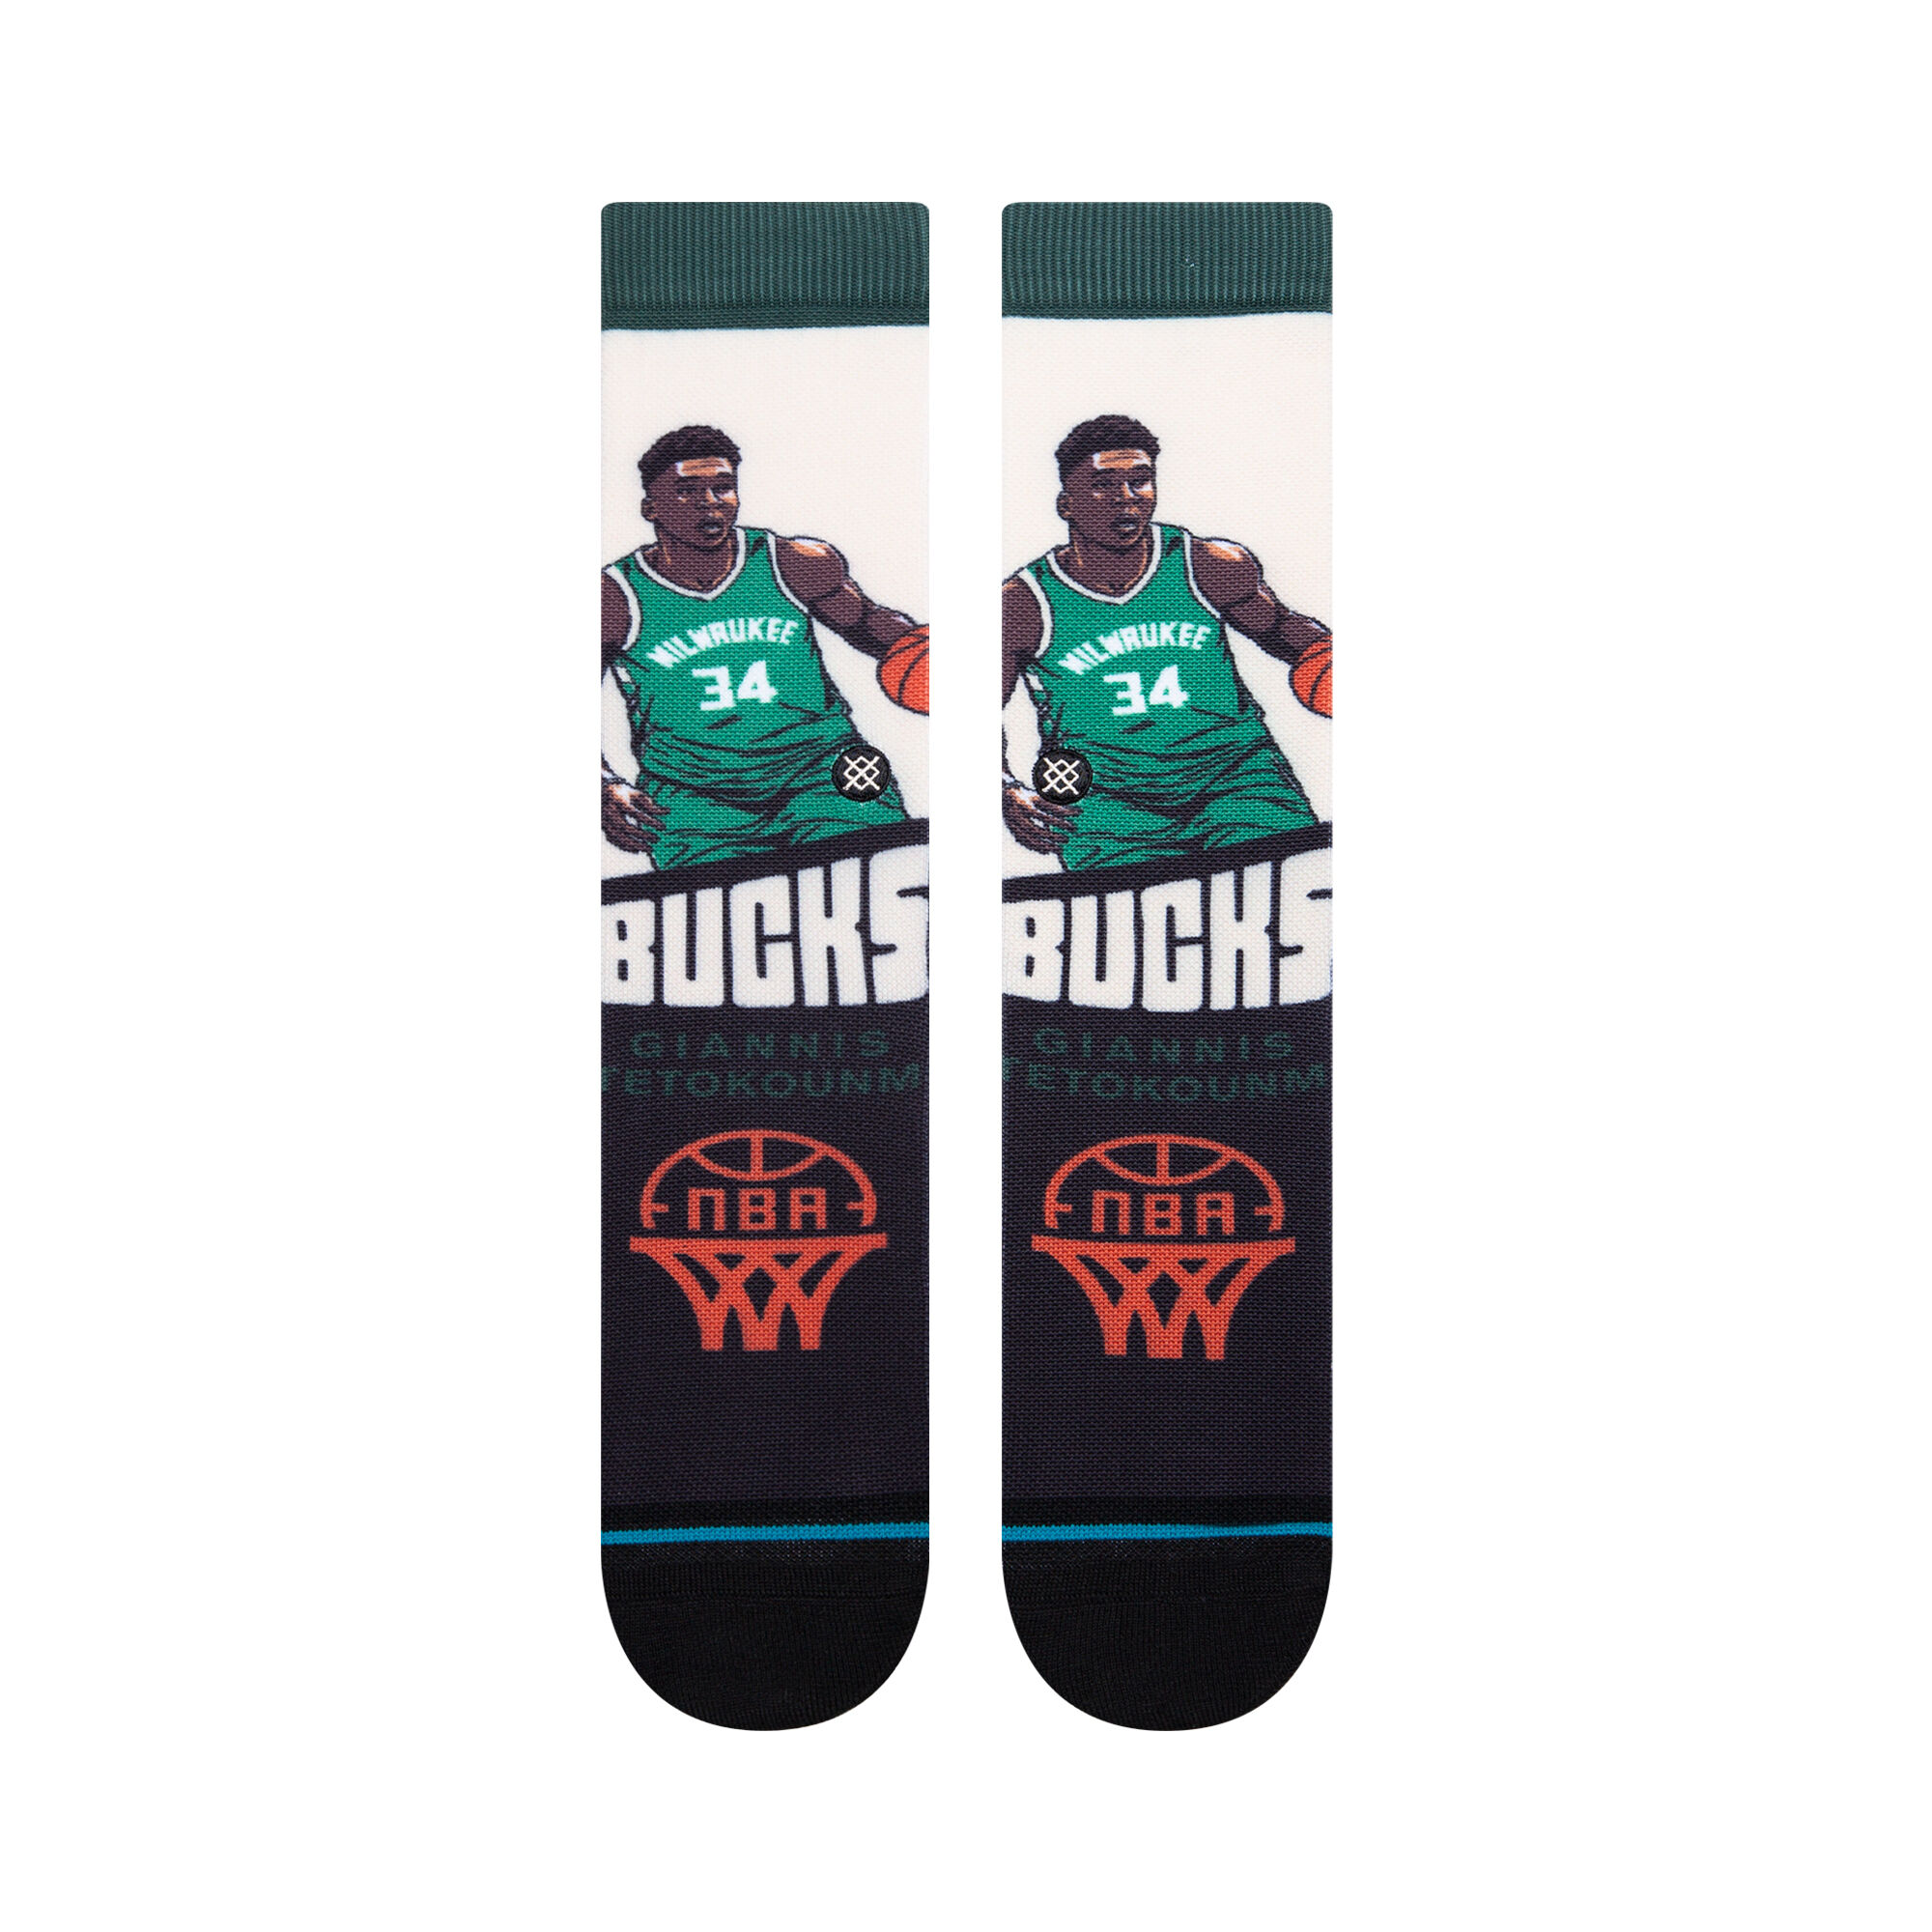 Details about   Giannis Antetokounmpo Milwaukee Bucks Premium Full Sub Socks 